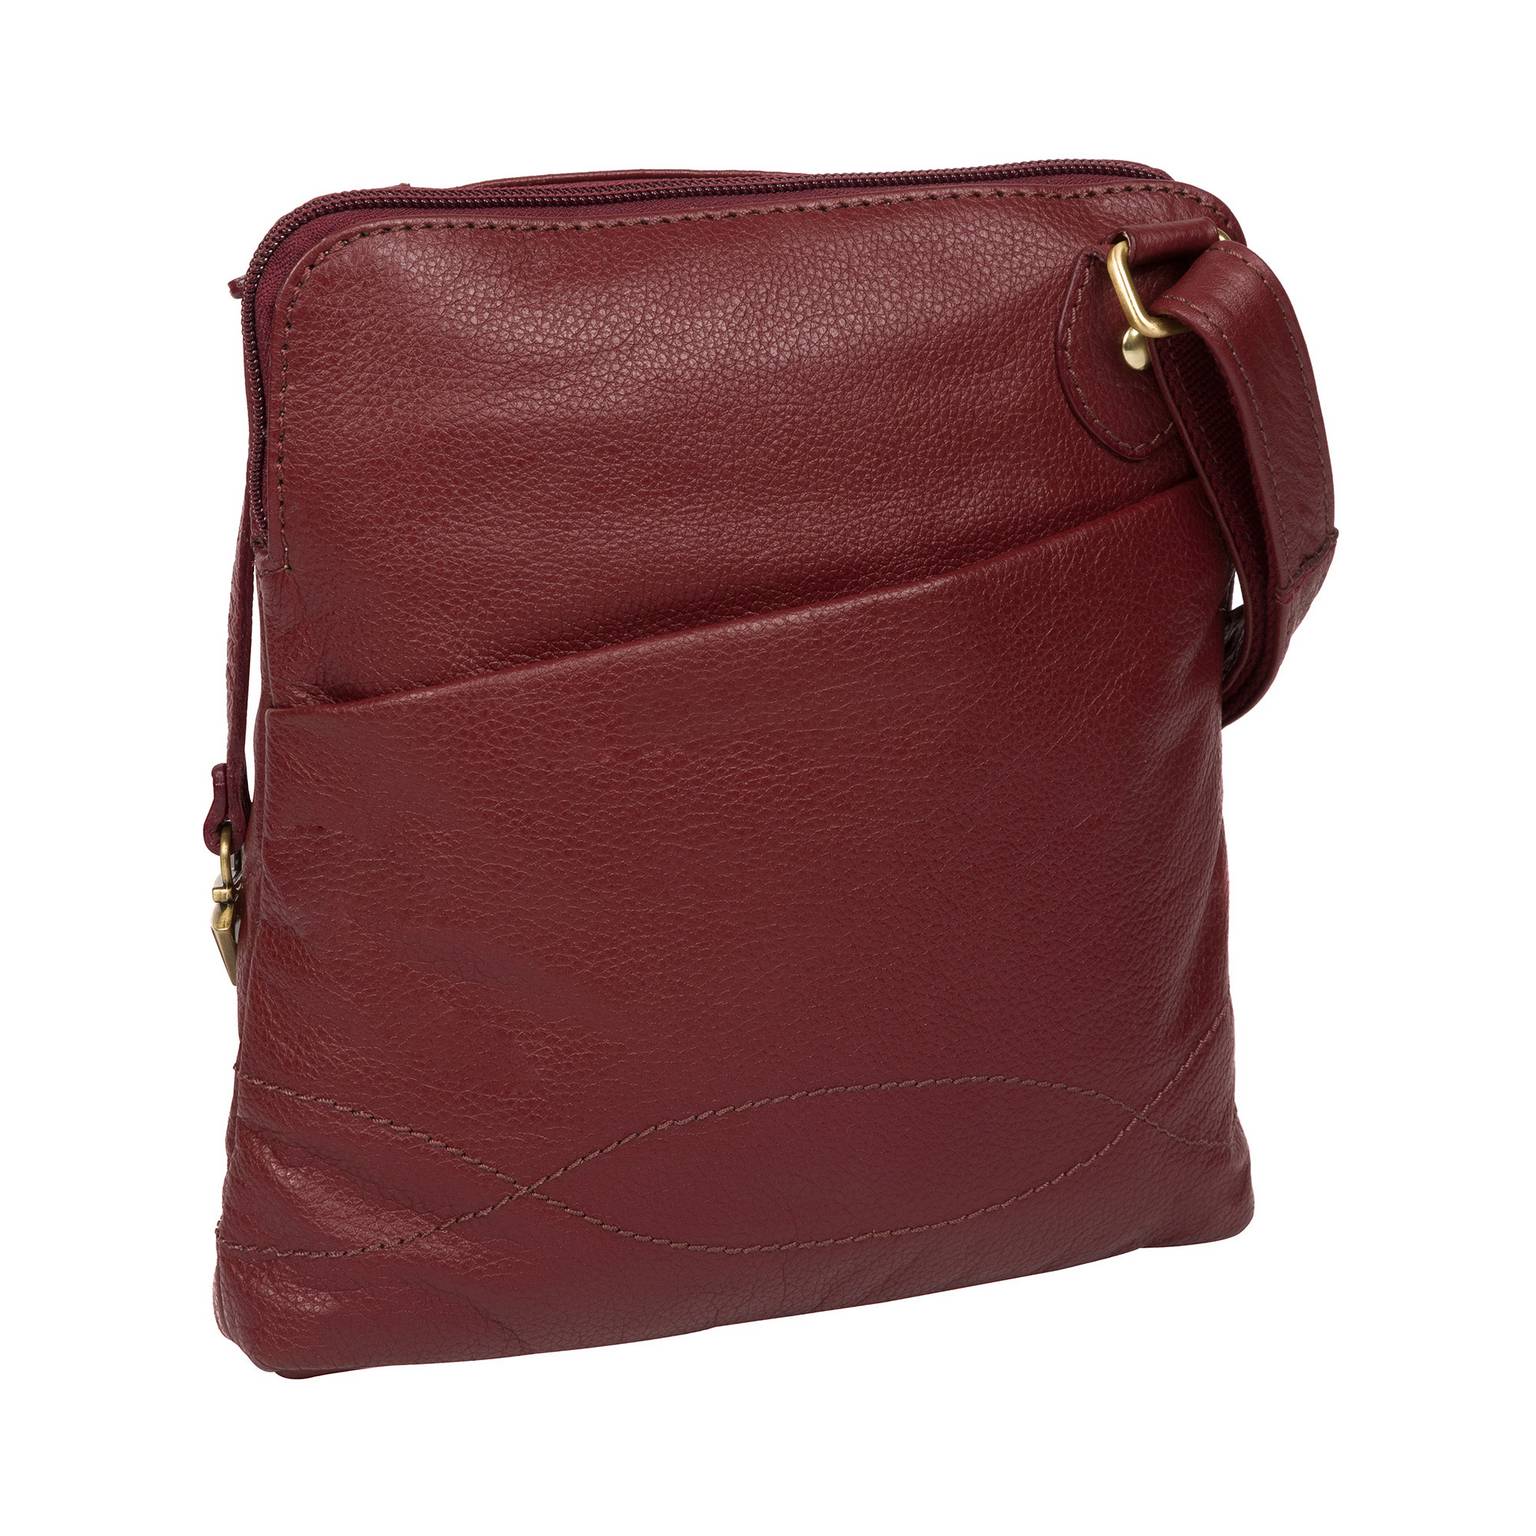 Dark Red Leather Shoulder Bag, Cross Body Bag